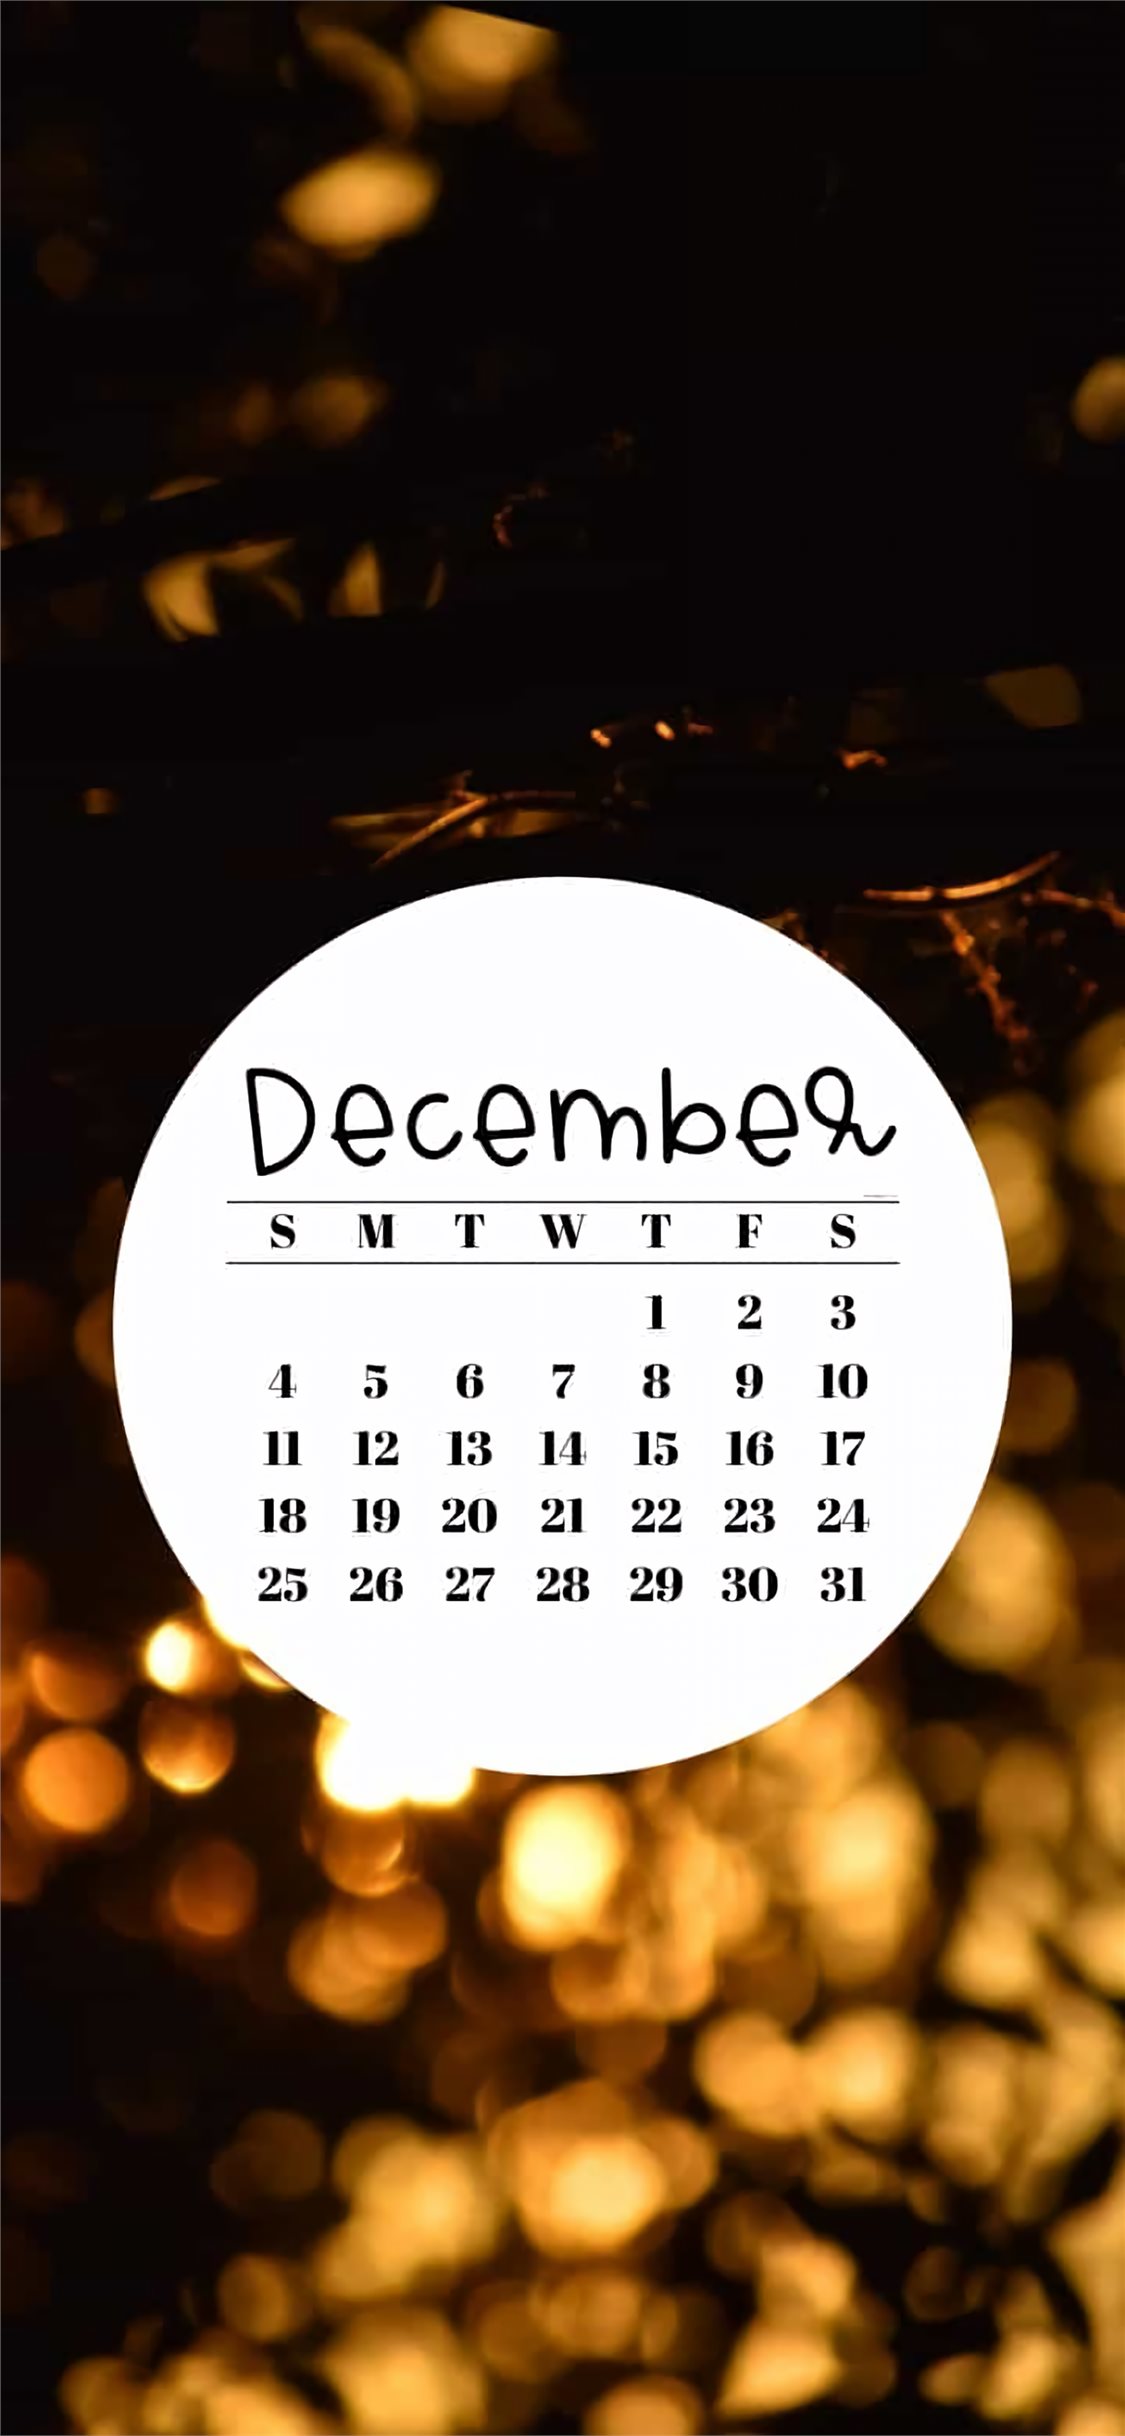 December 2022 Desktop Wallpaper Calendar  CalendarLabs